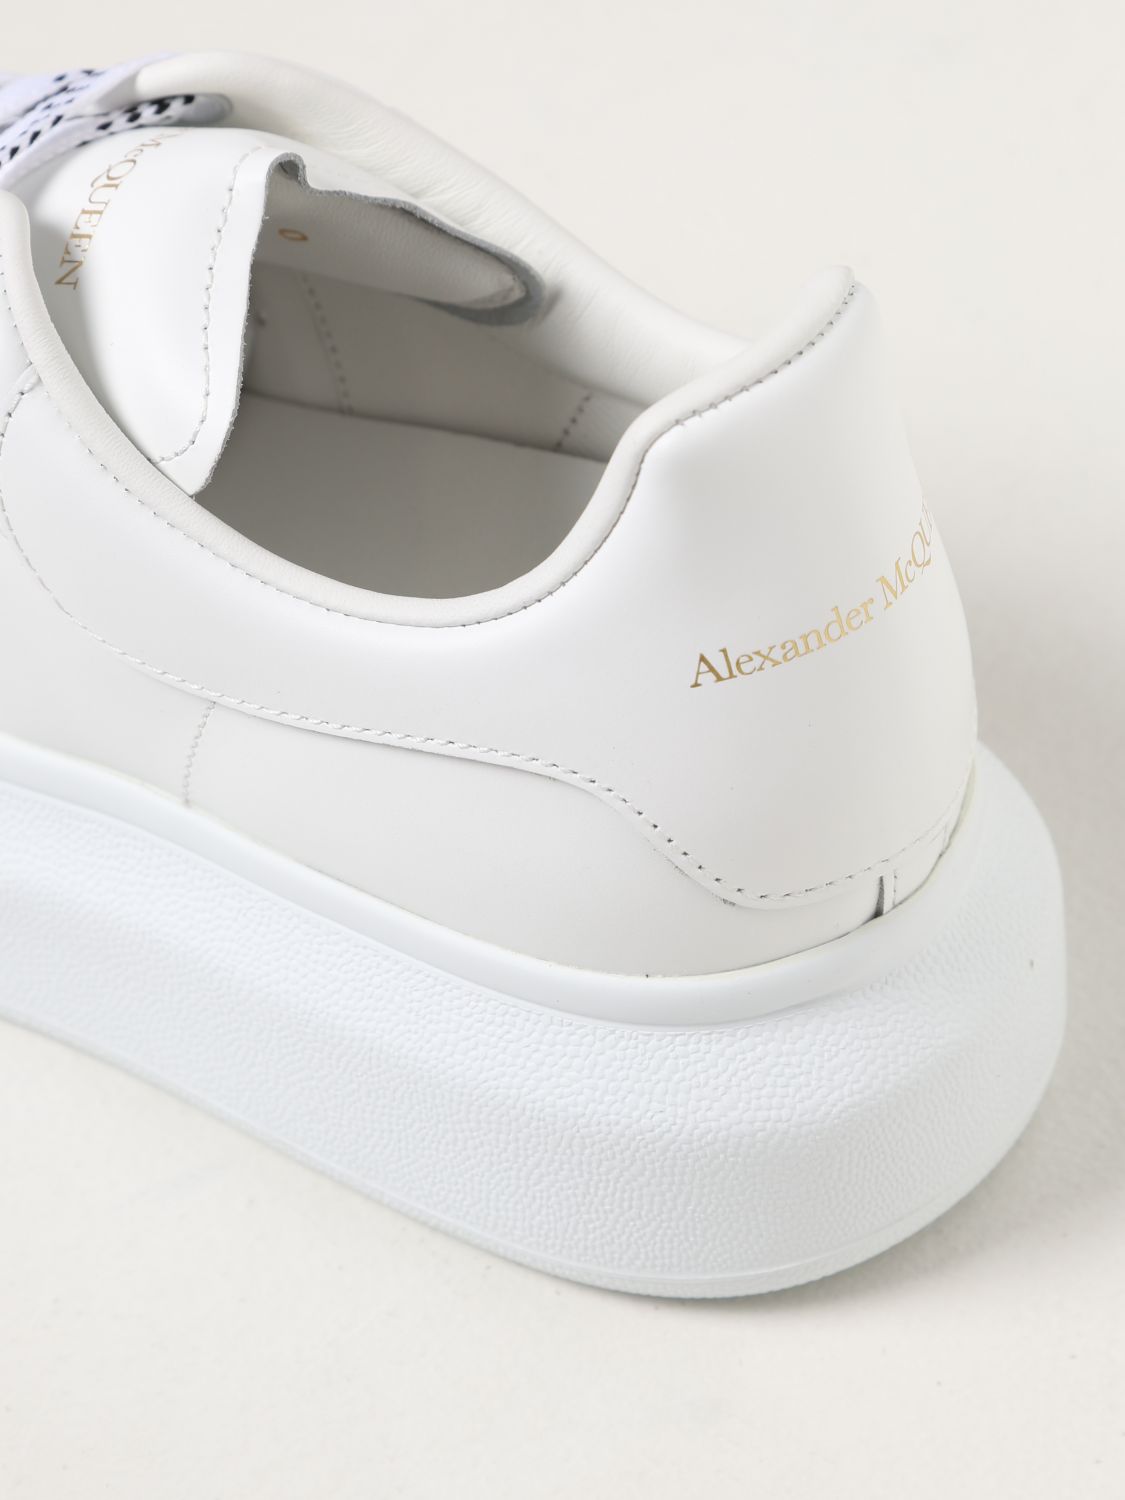 Sneakers Alexander Mcqueen: Alexander McQueen leather sneakers white 1 4